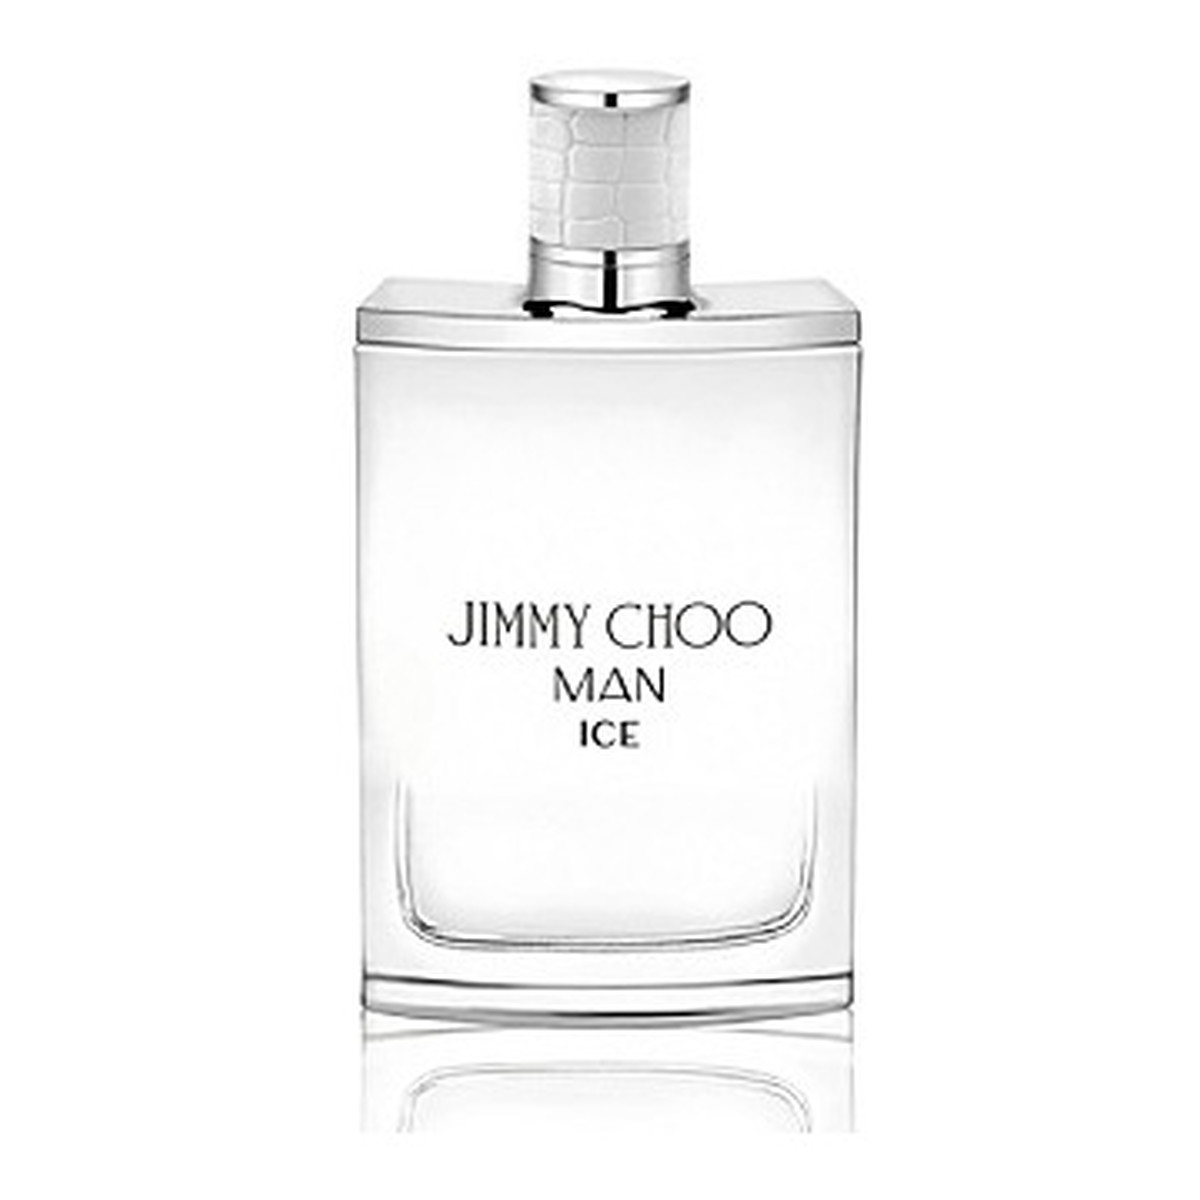 Jimmy Choo Man Ice Woda toaletowa spray 50ml